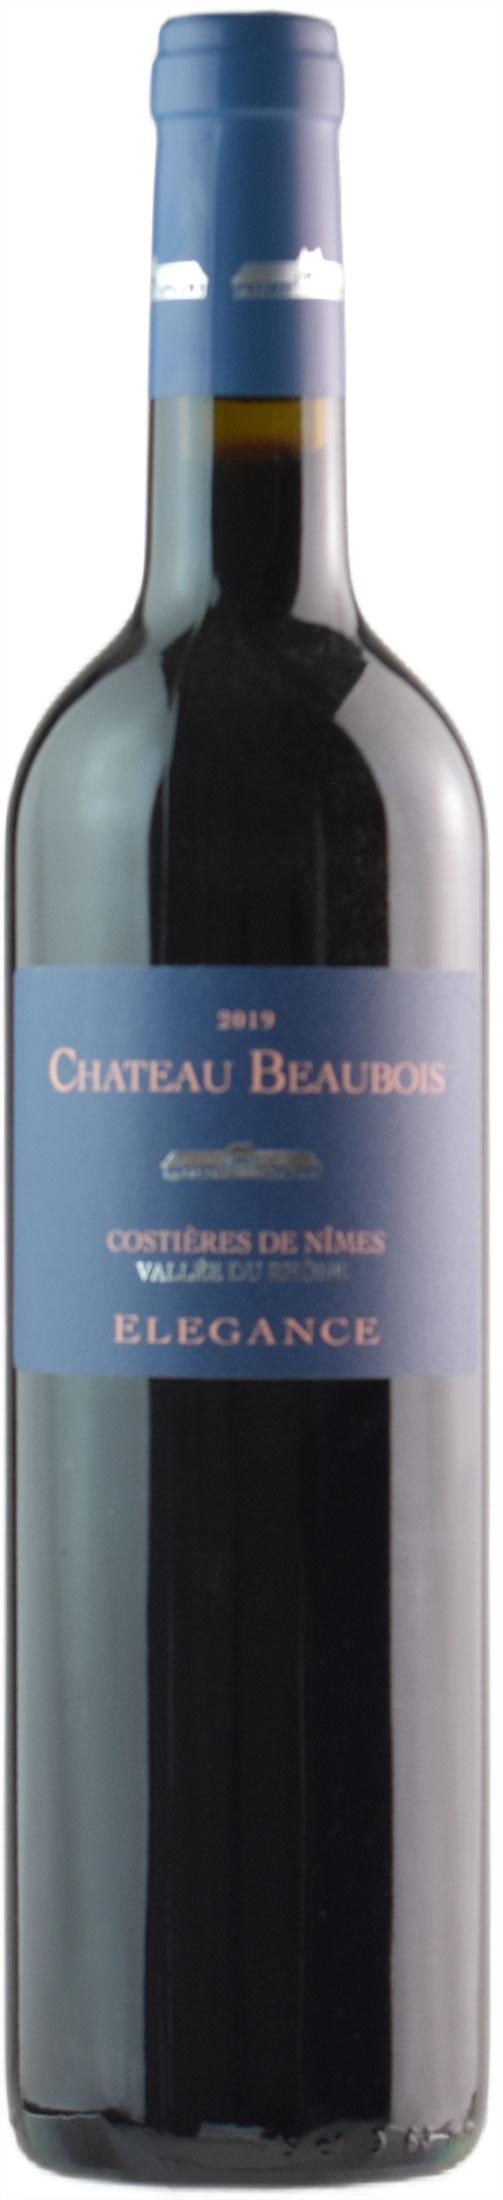 Chateau Beaubois Costieres de Nimes Rouge Elegance 2019